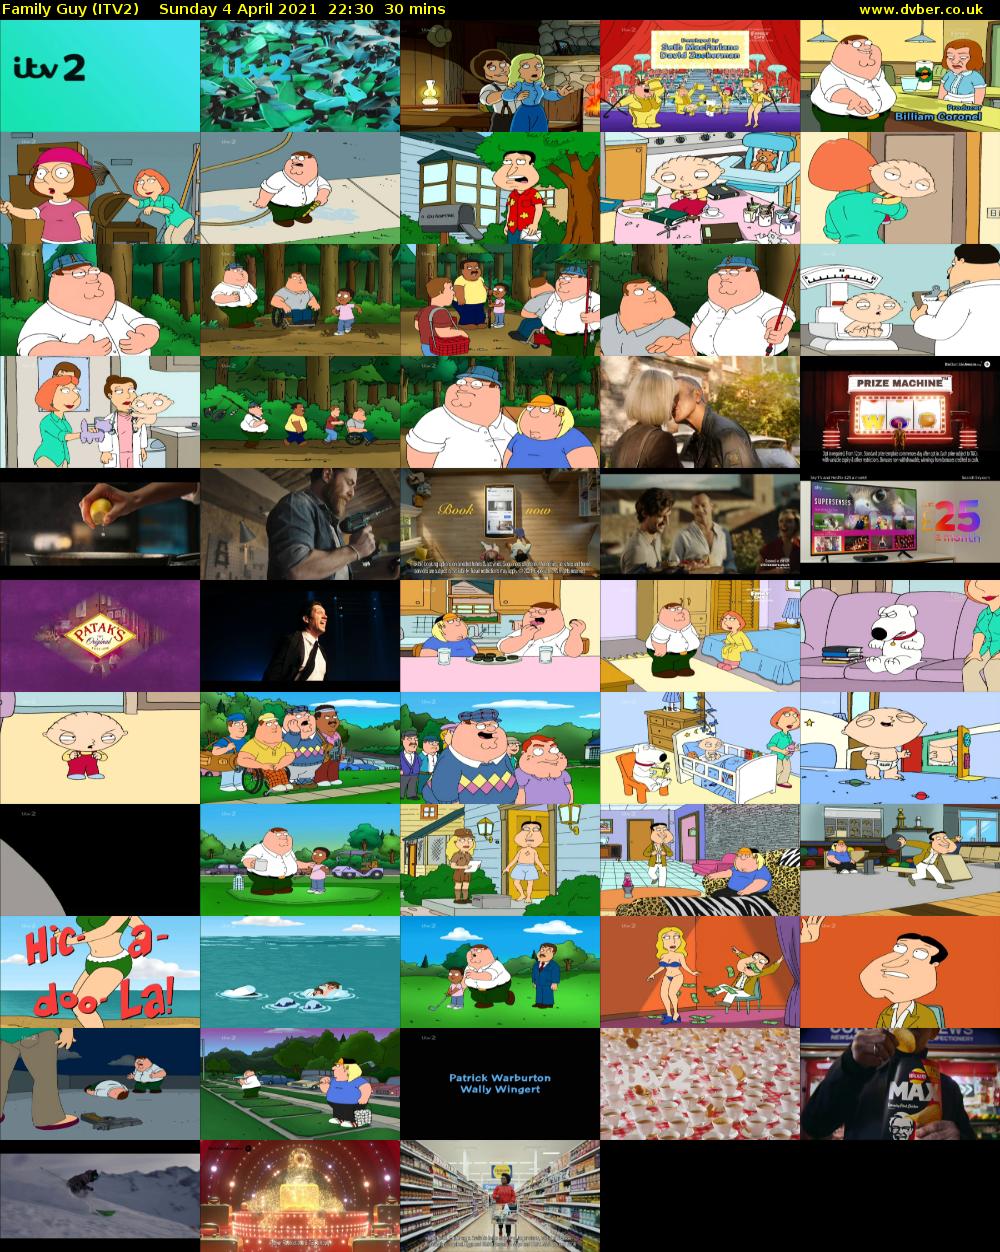 Family Guy (ITV2) Sunday 4 April 2021 22:30 - 23:00